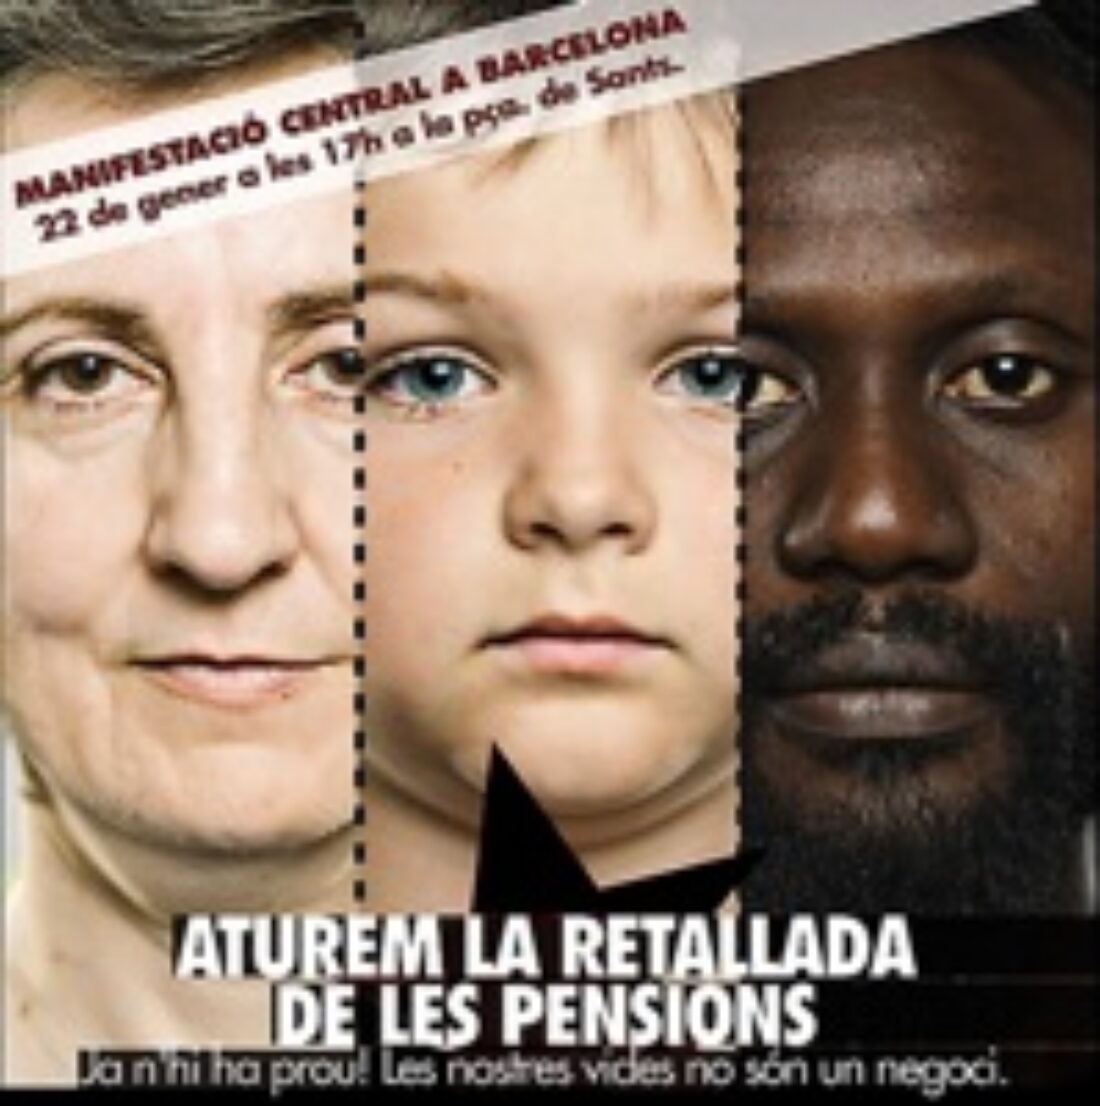 25 enero, Barcelona : Jornada Contra el pensionazo, por Miren Etxezarreta